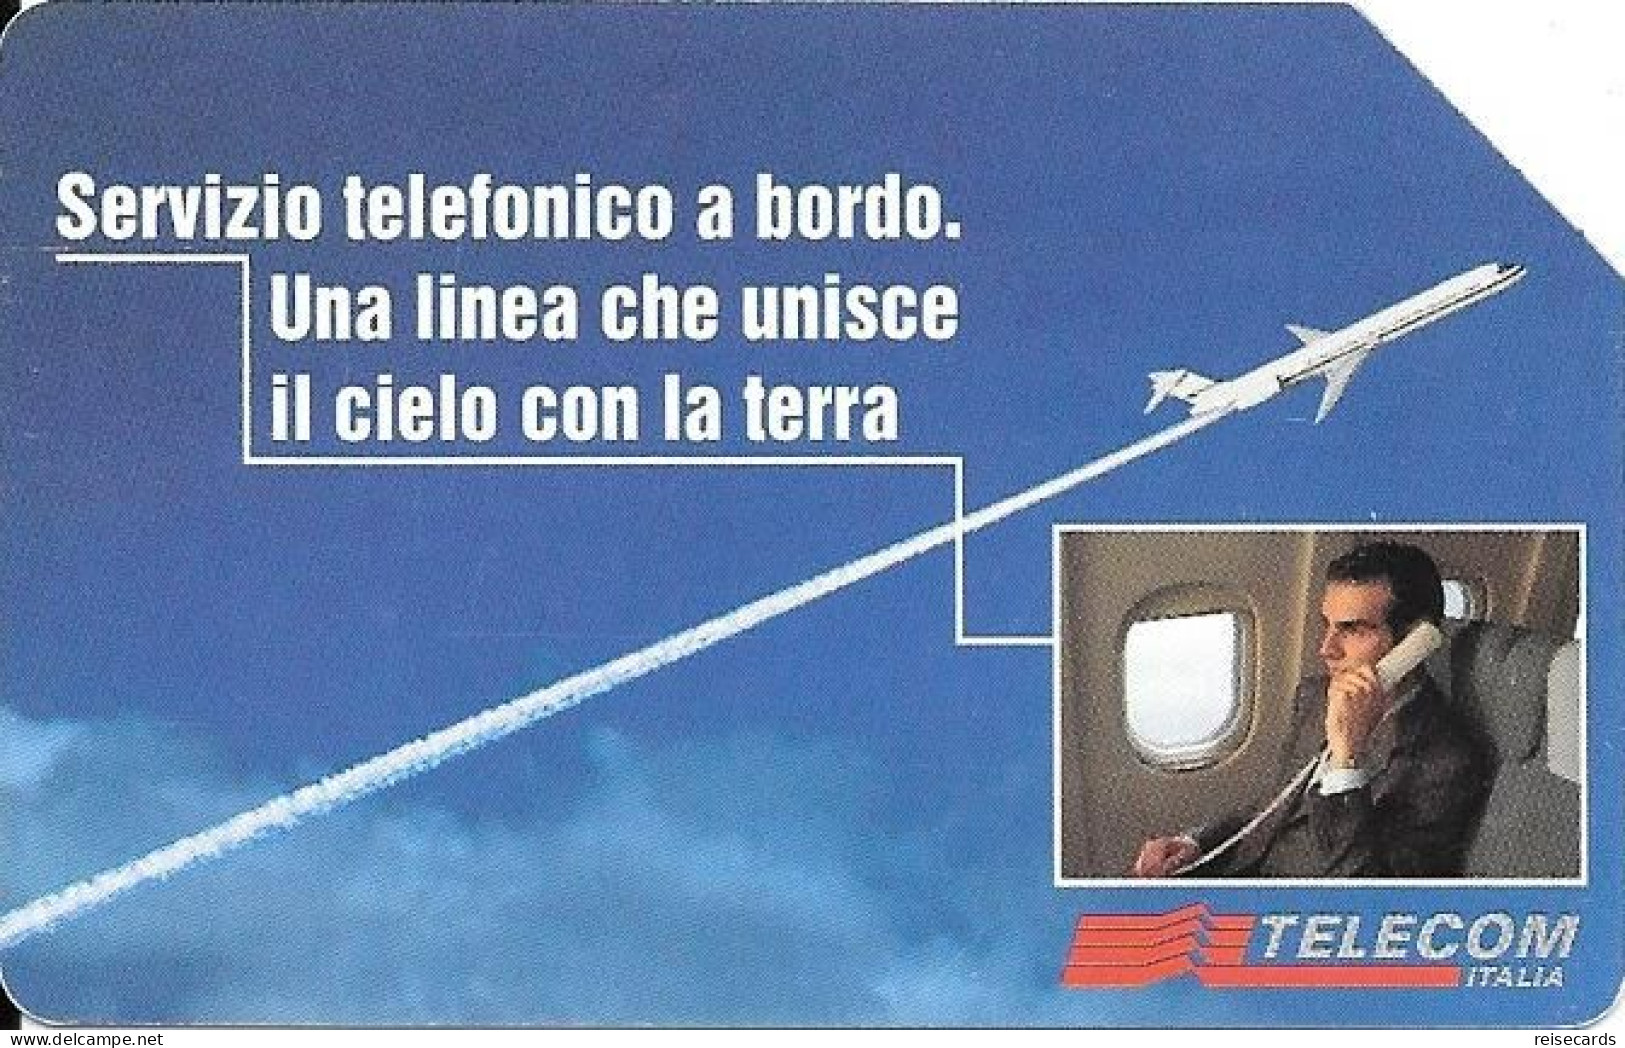 Italy: Telecom Italia - Servizio Telefonico A Bordo - Öff. Werbe-TK